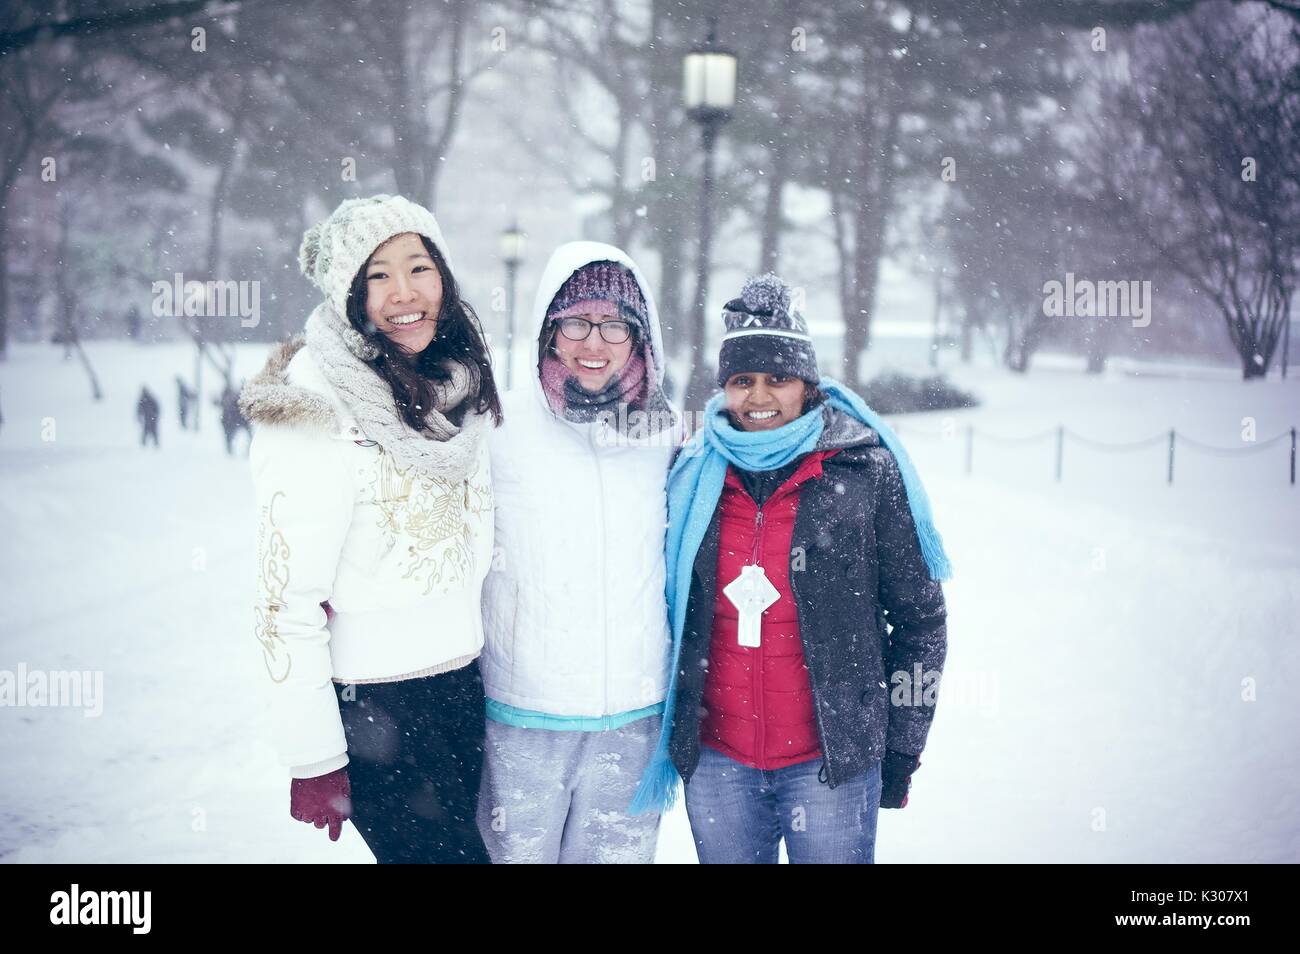 Drei Studentinnen im Schnee gang Lächeln gekleidet und für ein Foto im Schnee mit Arme umeinander gewickelt darstellen, während einer Snow Day an der Johns Hopkins University, Baltimore, Maryland, 2016. Stockfoto